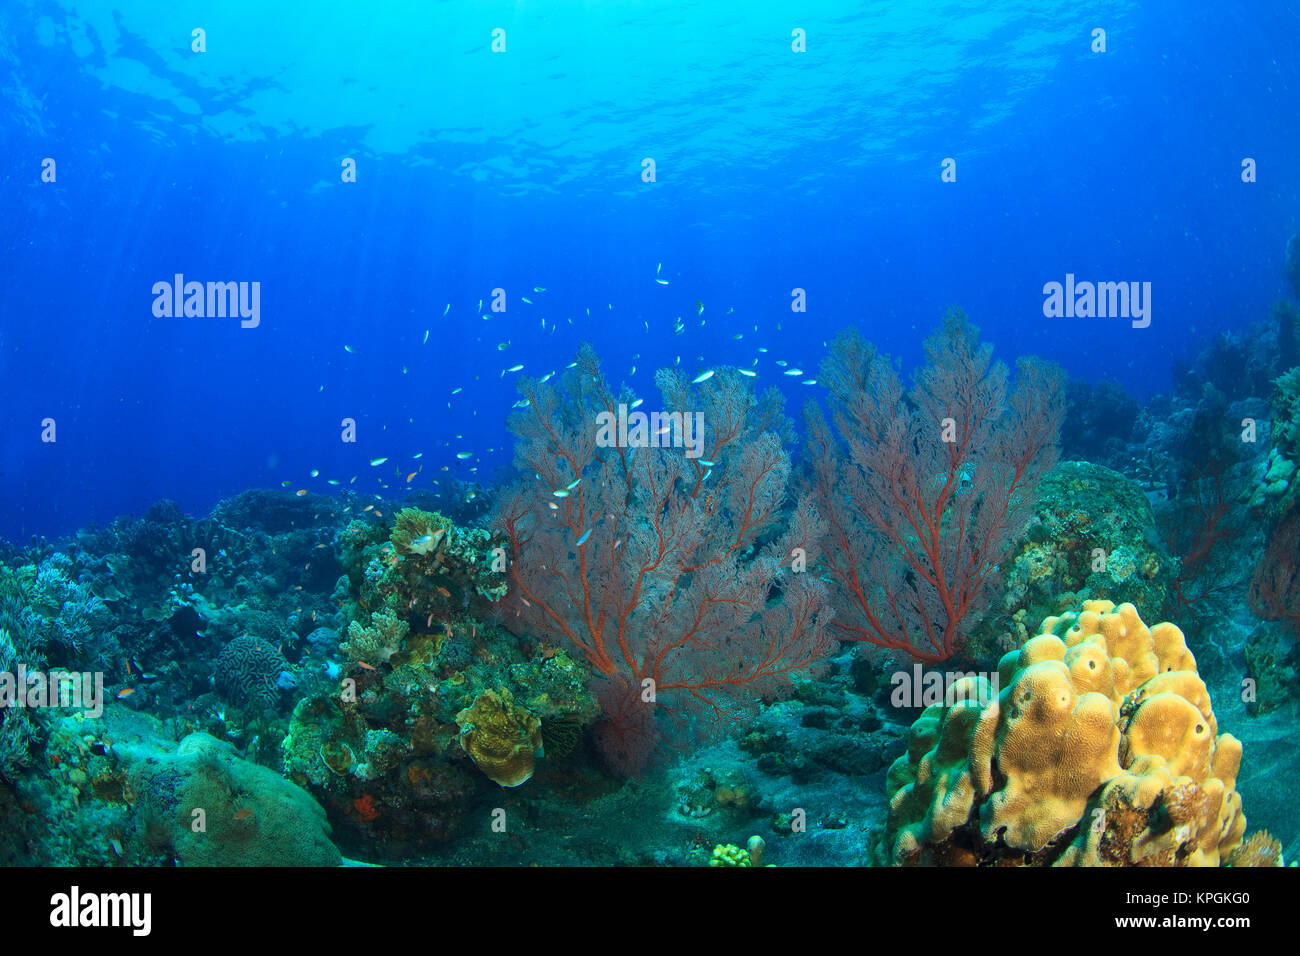 Brilliant red sea fans (Melithaea sp,), Komba Island, Flores Sea, Indonesia Stock Photo